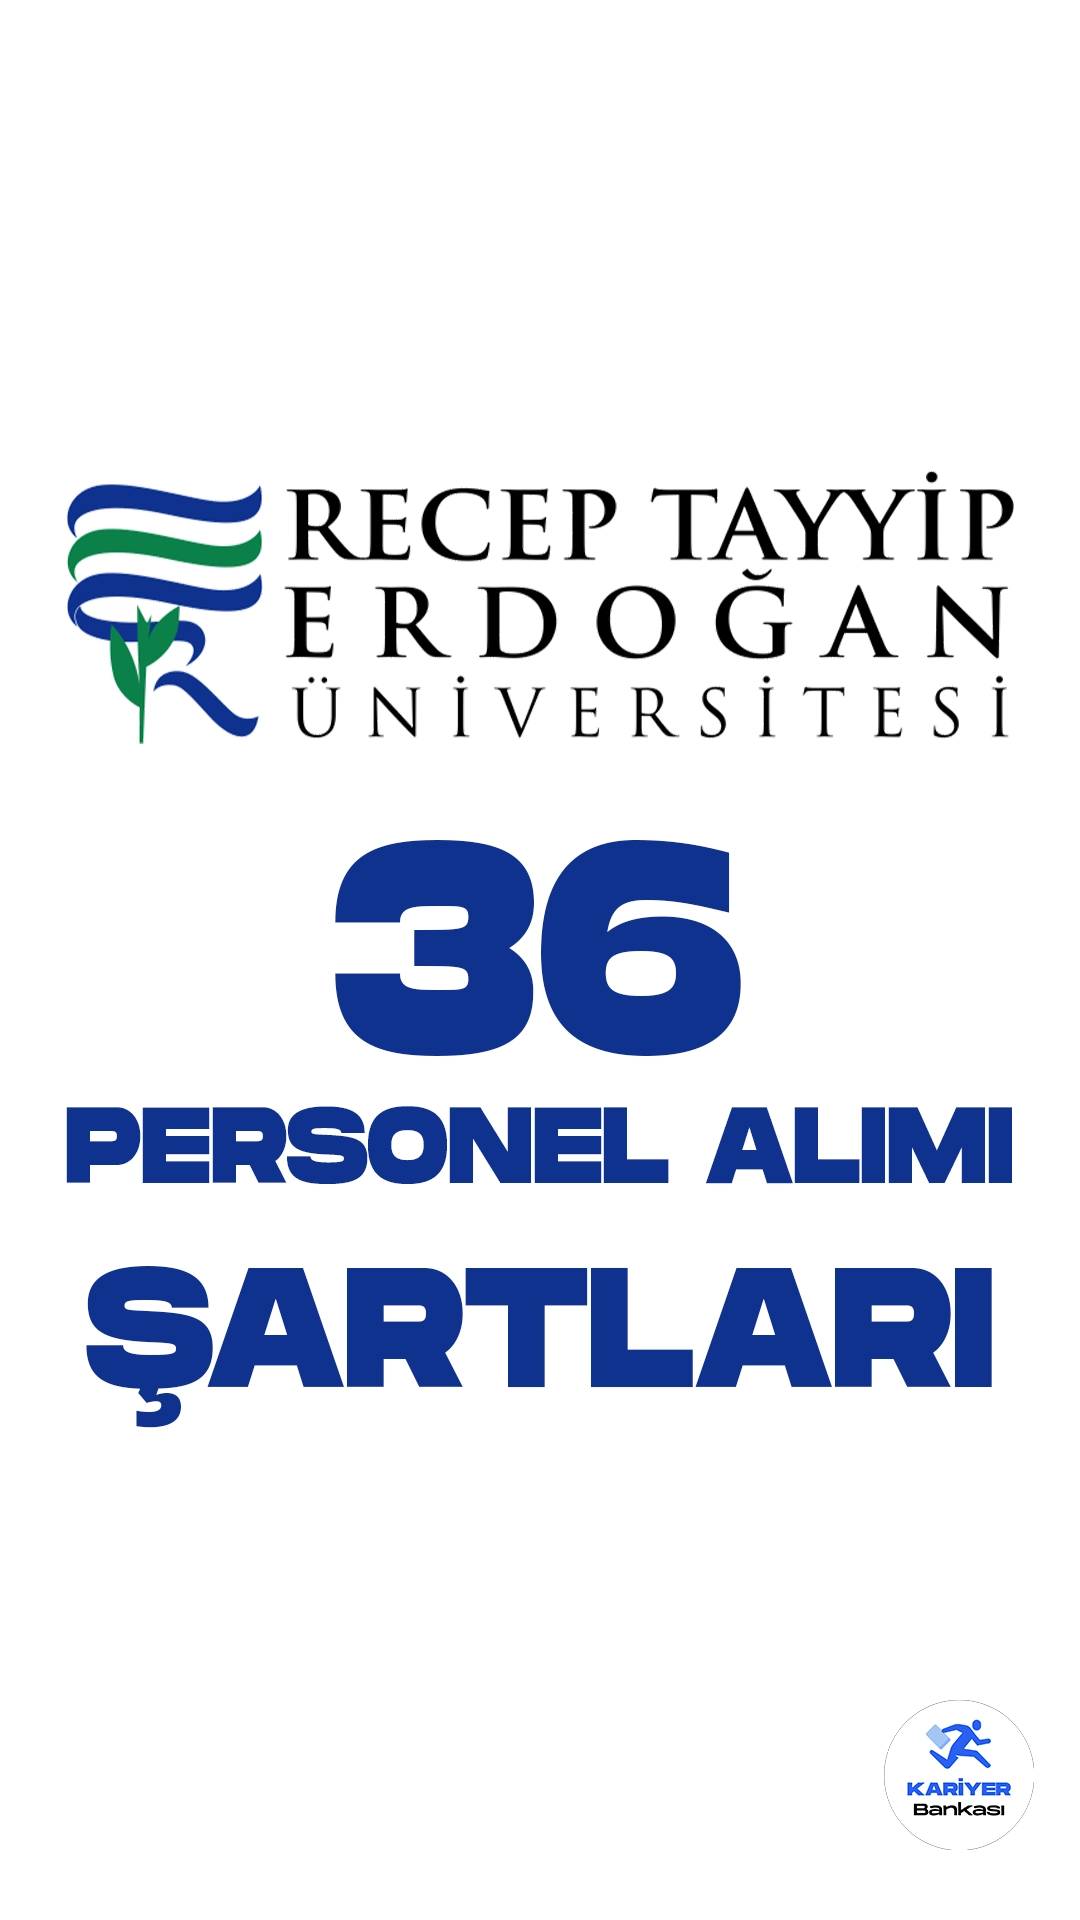 Recep Tayyip Erdoğan Üniversitesi personel alımı için başvuru işlemleri devam ediyor. Başvuru şartlarına dair detaylar bu haberimizde.